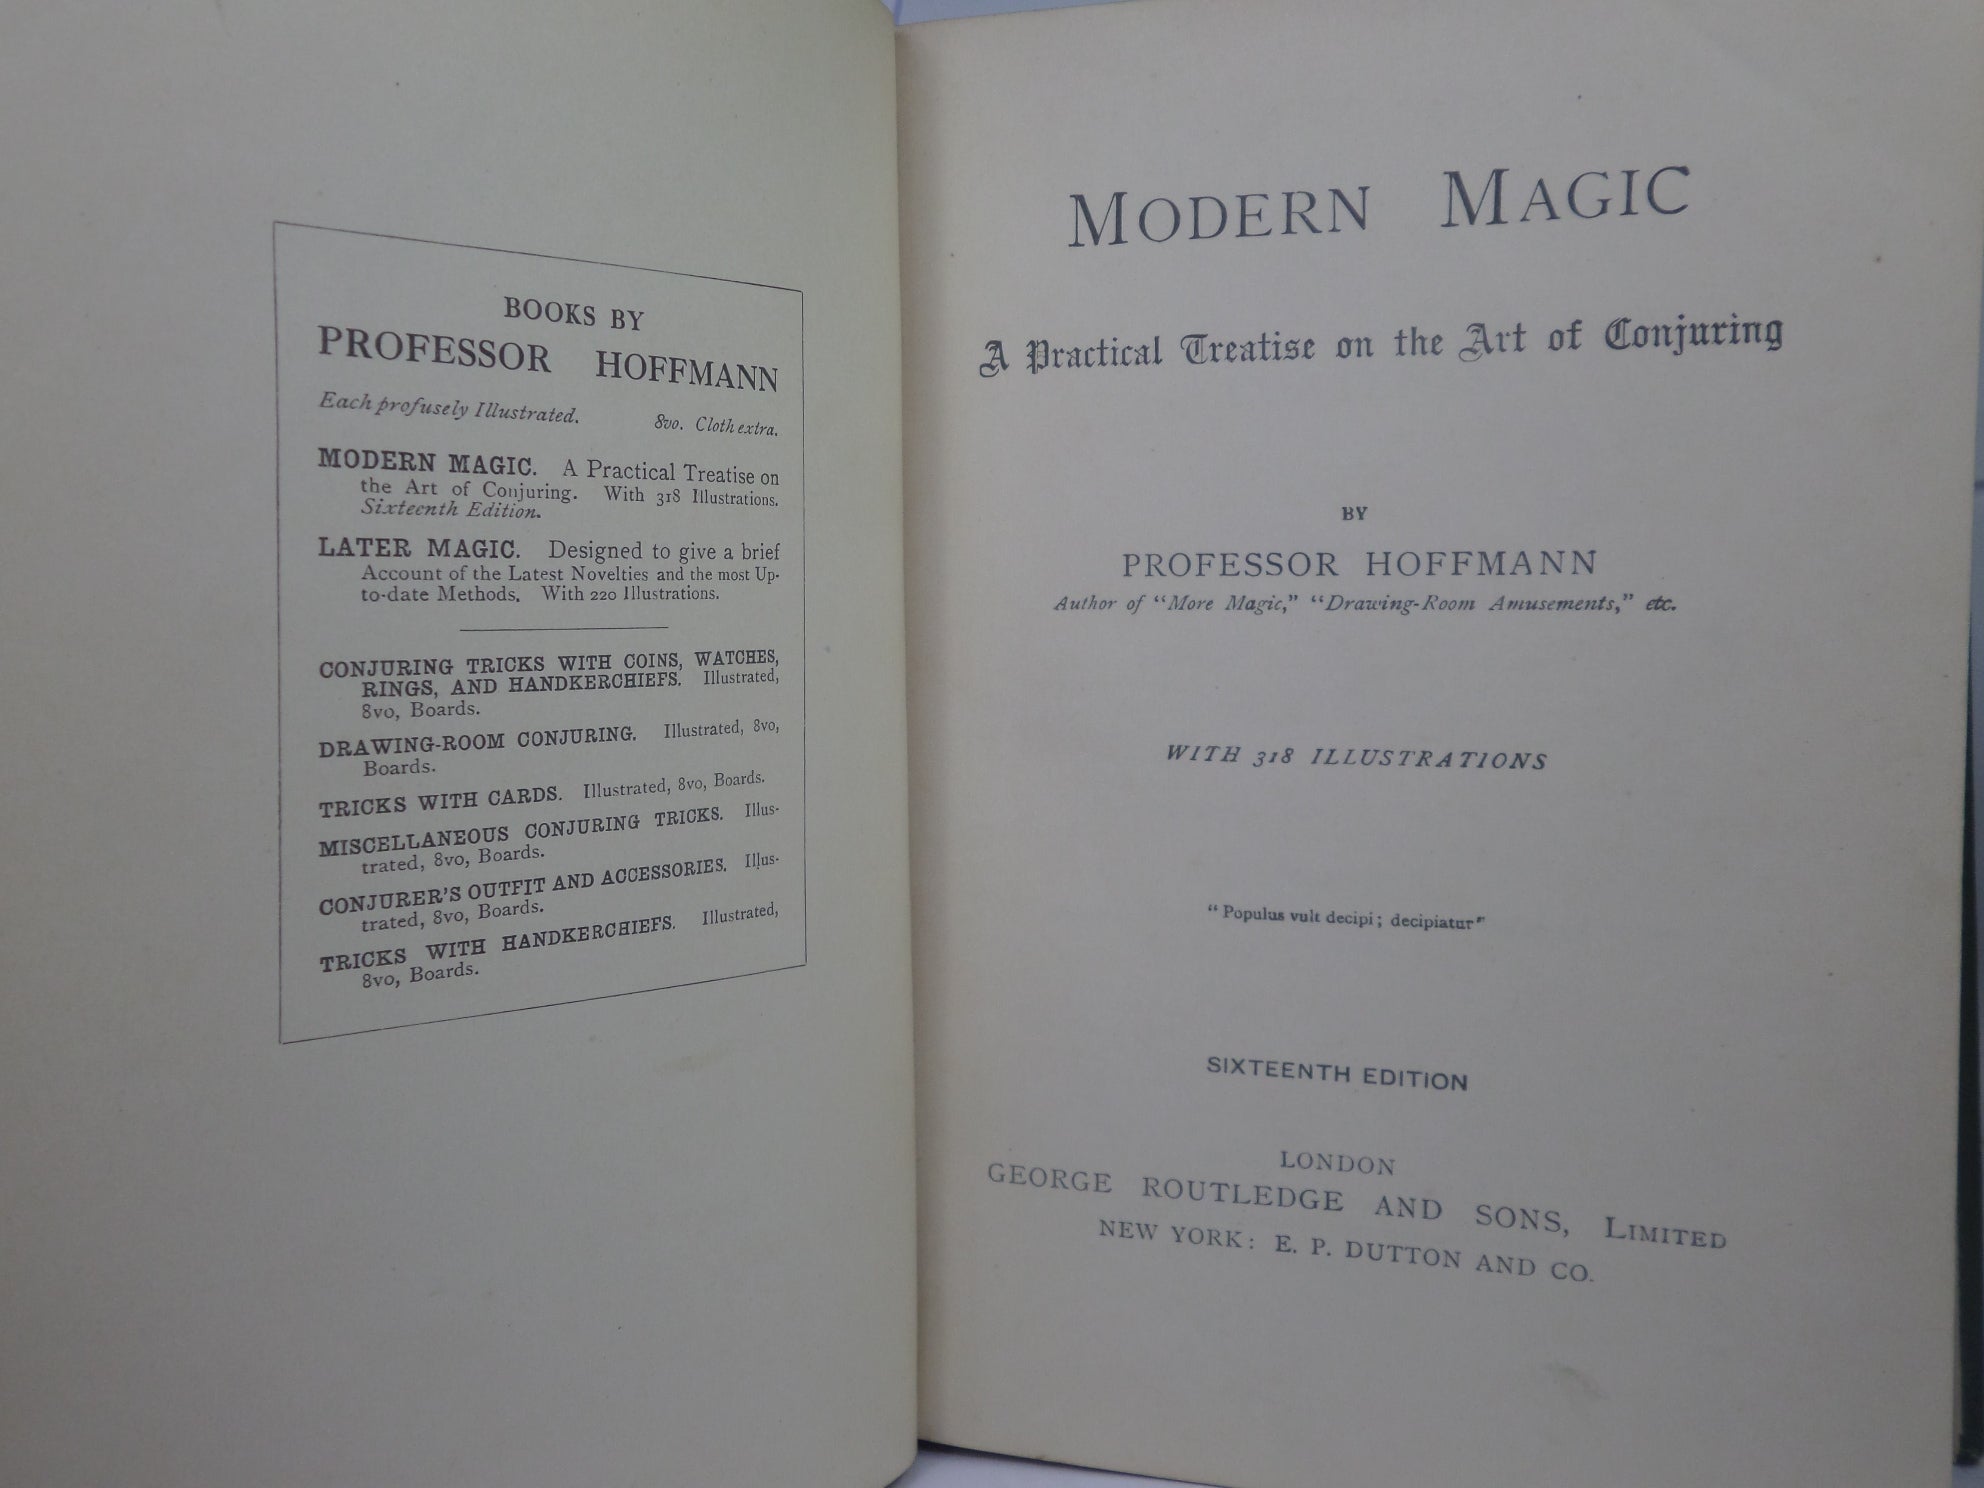 MODERN MAGIC BY PROFESSOR HOFFMANN